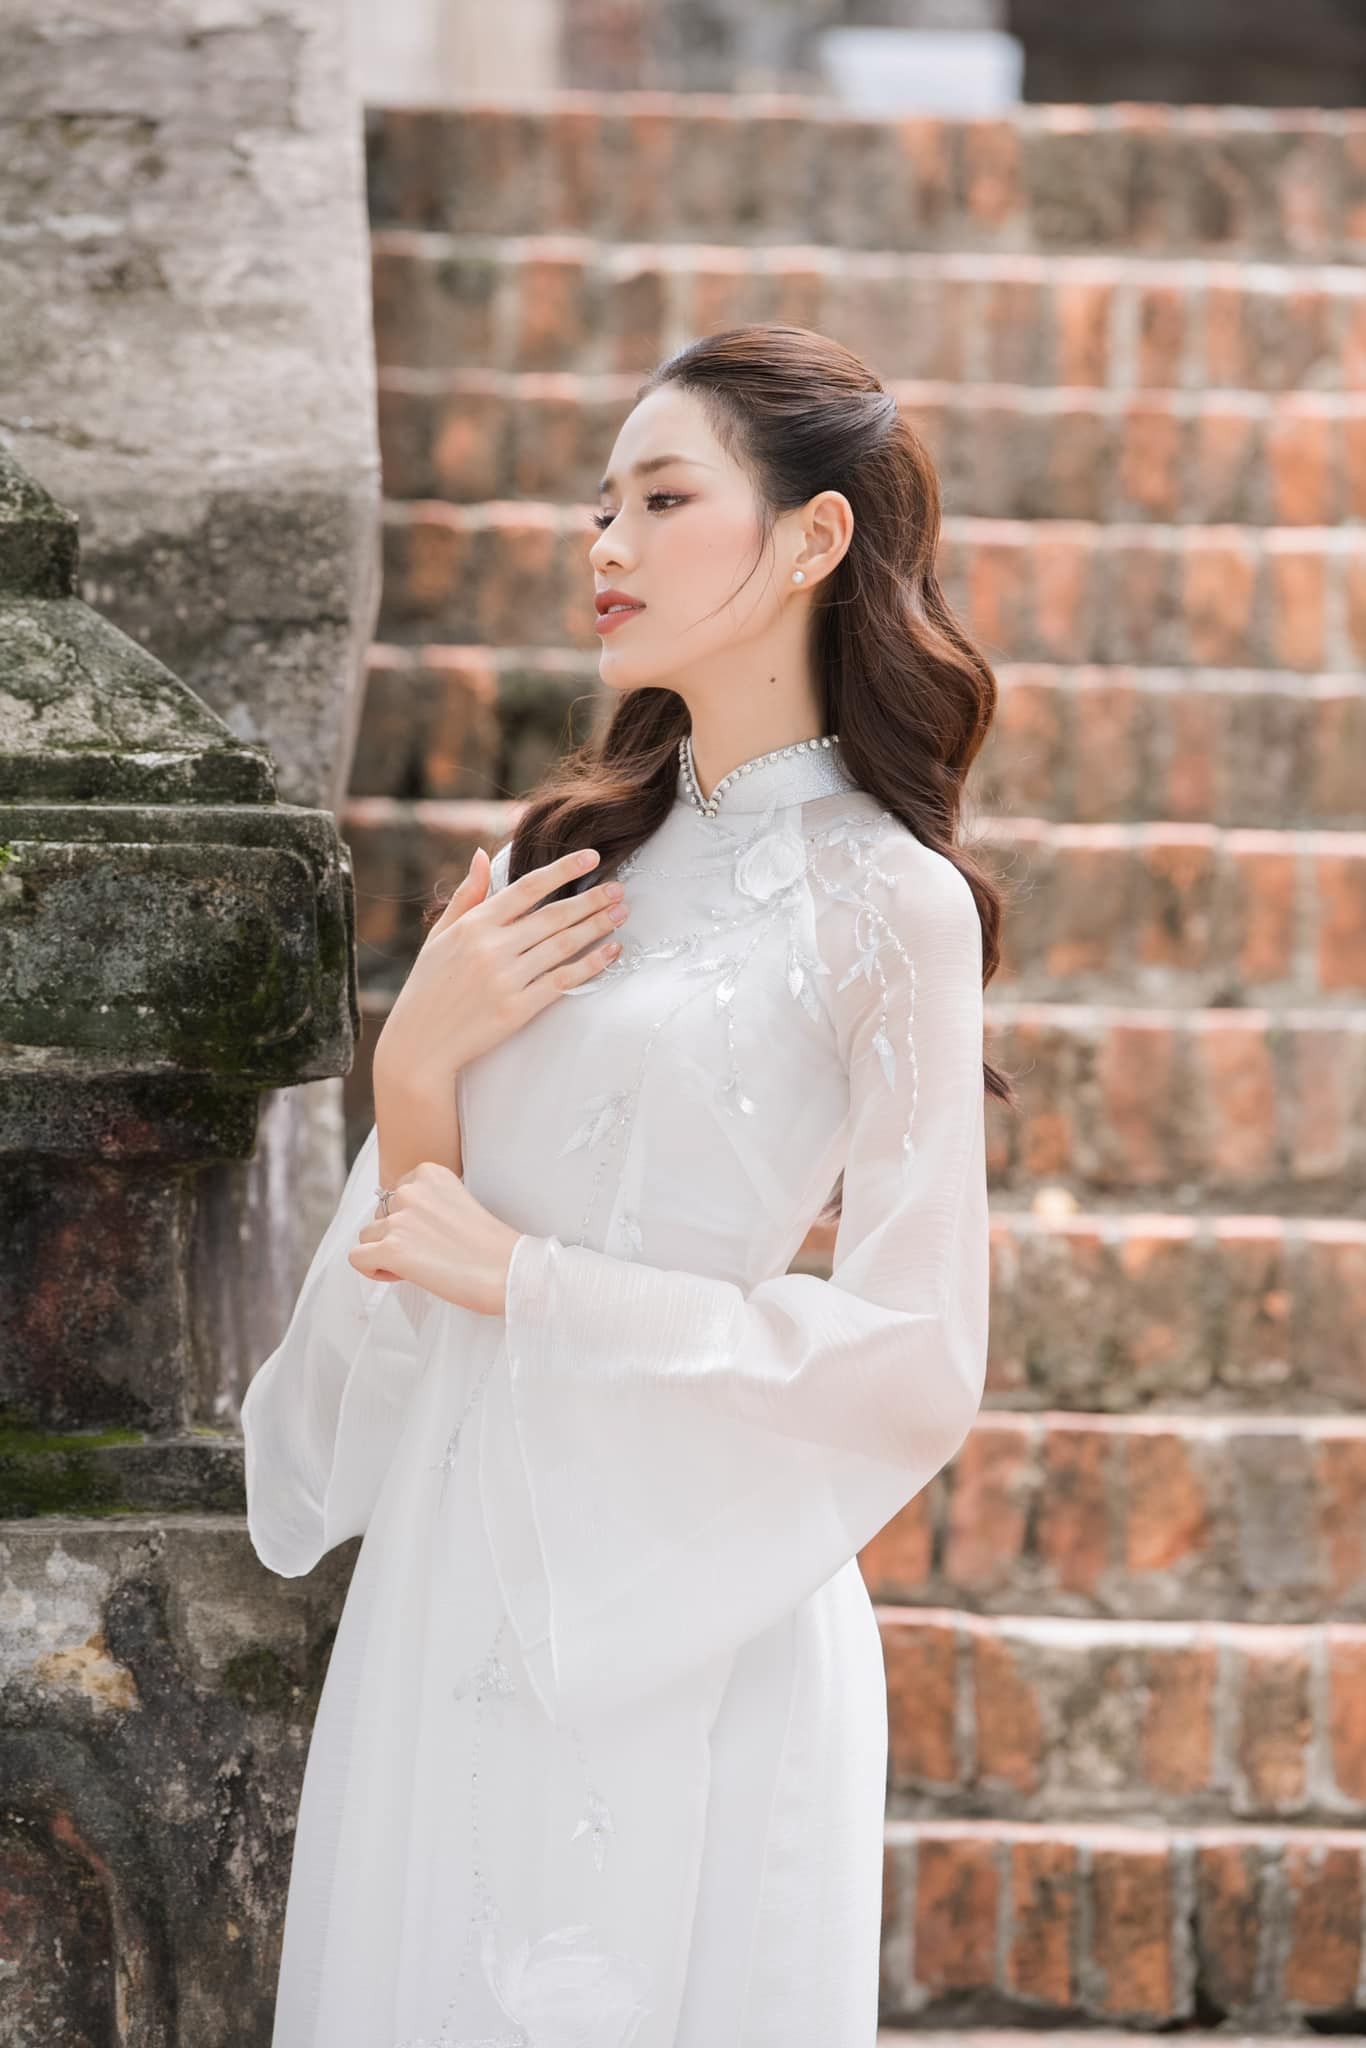 Hoa hậu Đỗ Thị Hà: Nhiều cú sốc đến với tôi và gia đình - Ảnh 3.